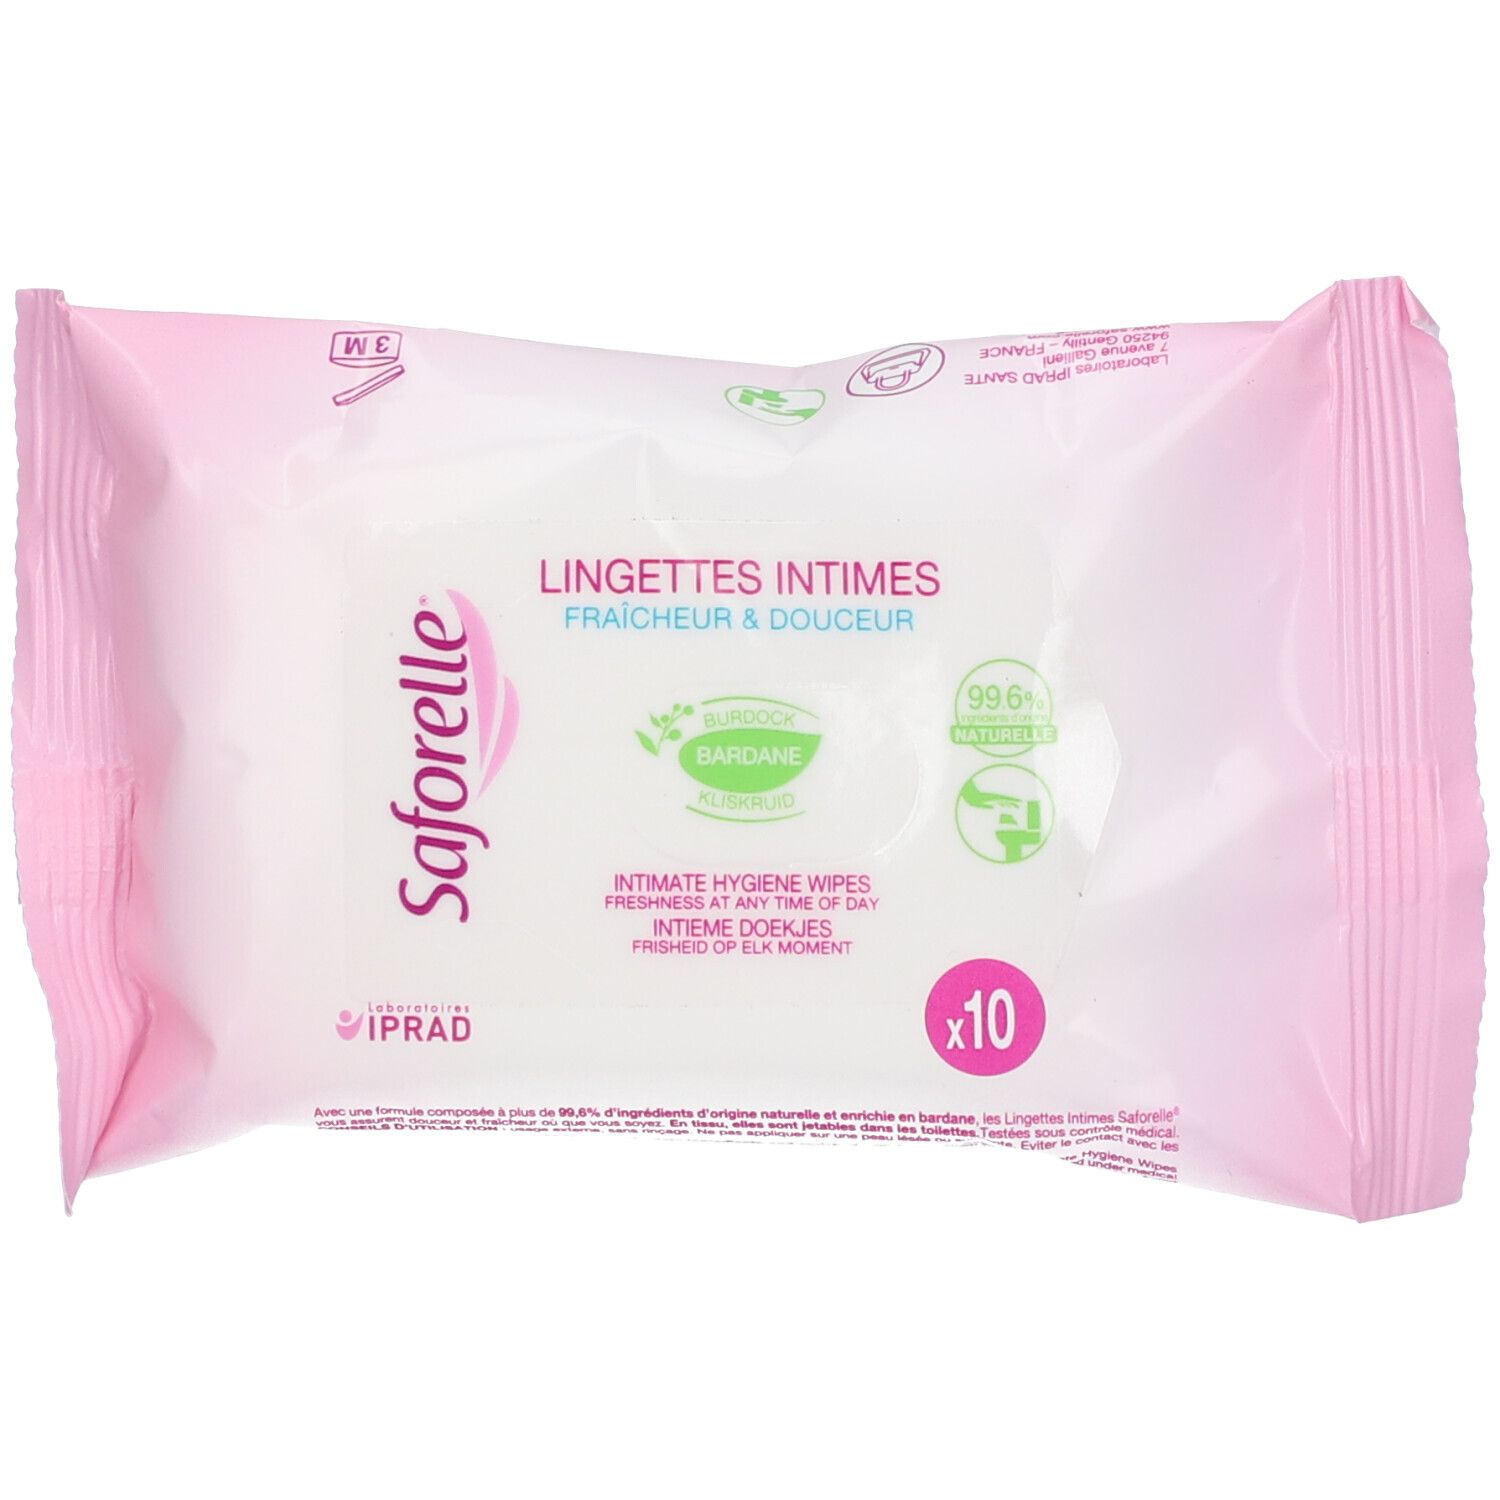 Saforelle® Lingettes Intimes Fraîcheur & Douceur